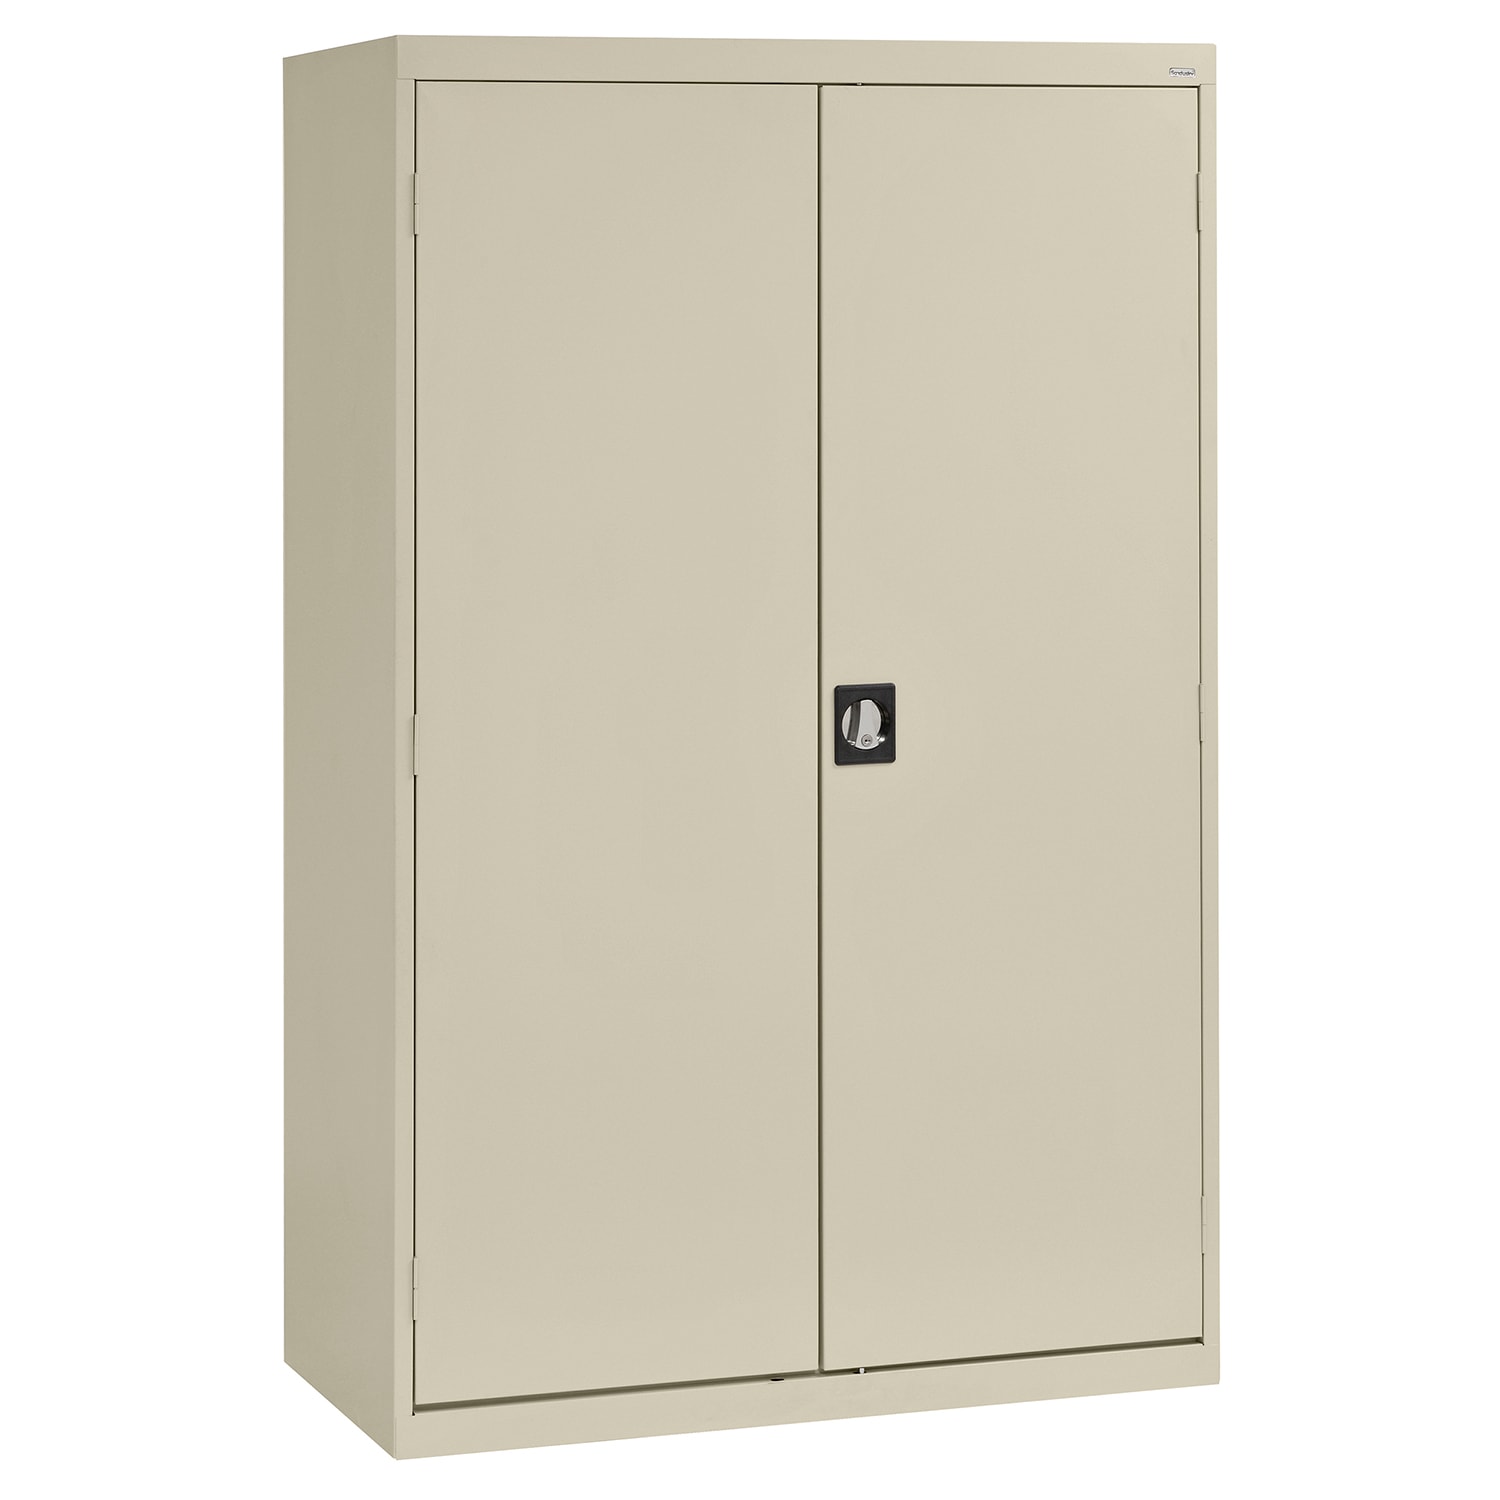 Steel Freestanding Garage Cabinet in Brown/Tan (46-in W x 72-in H x 24-in D) | - Sandusky EACR462472-07